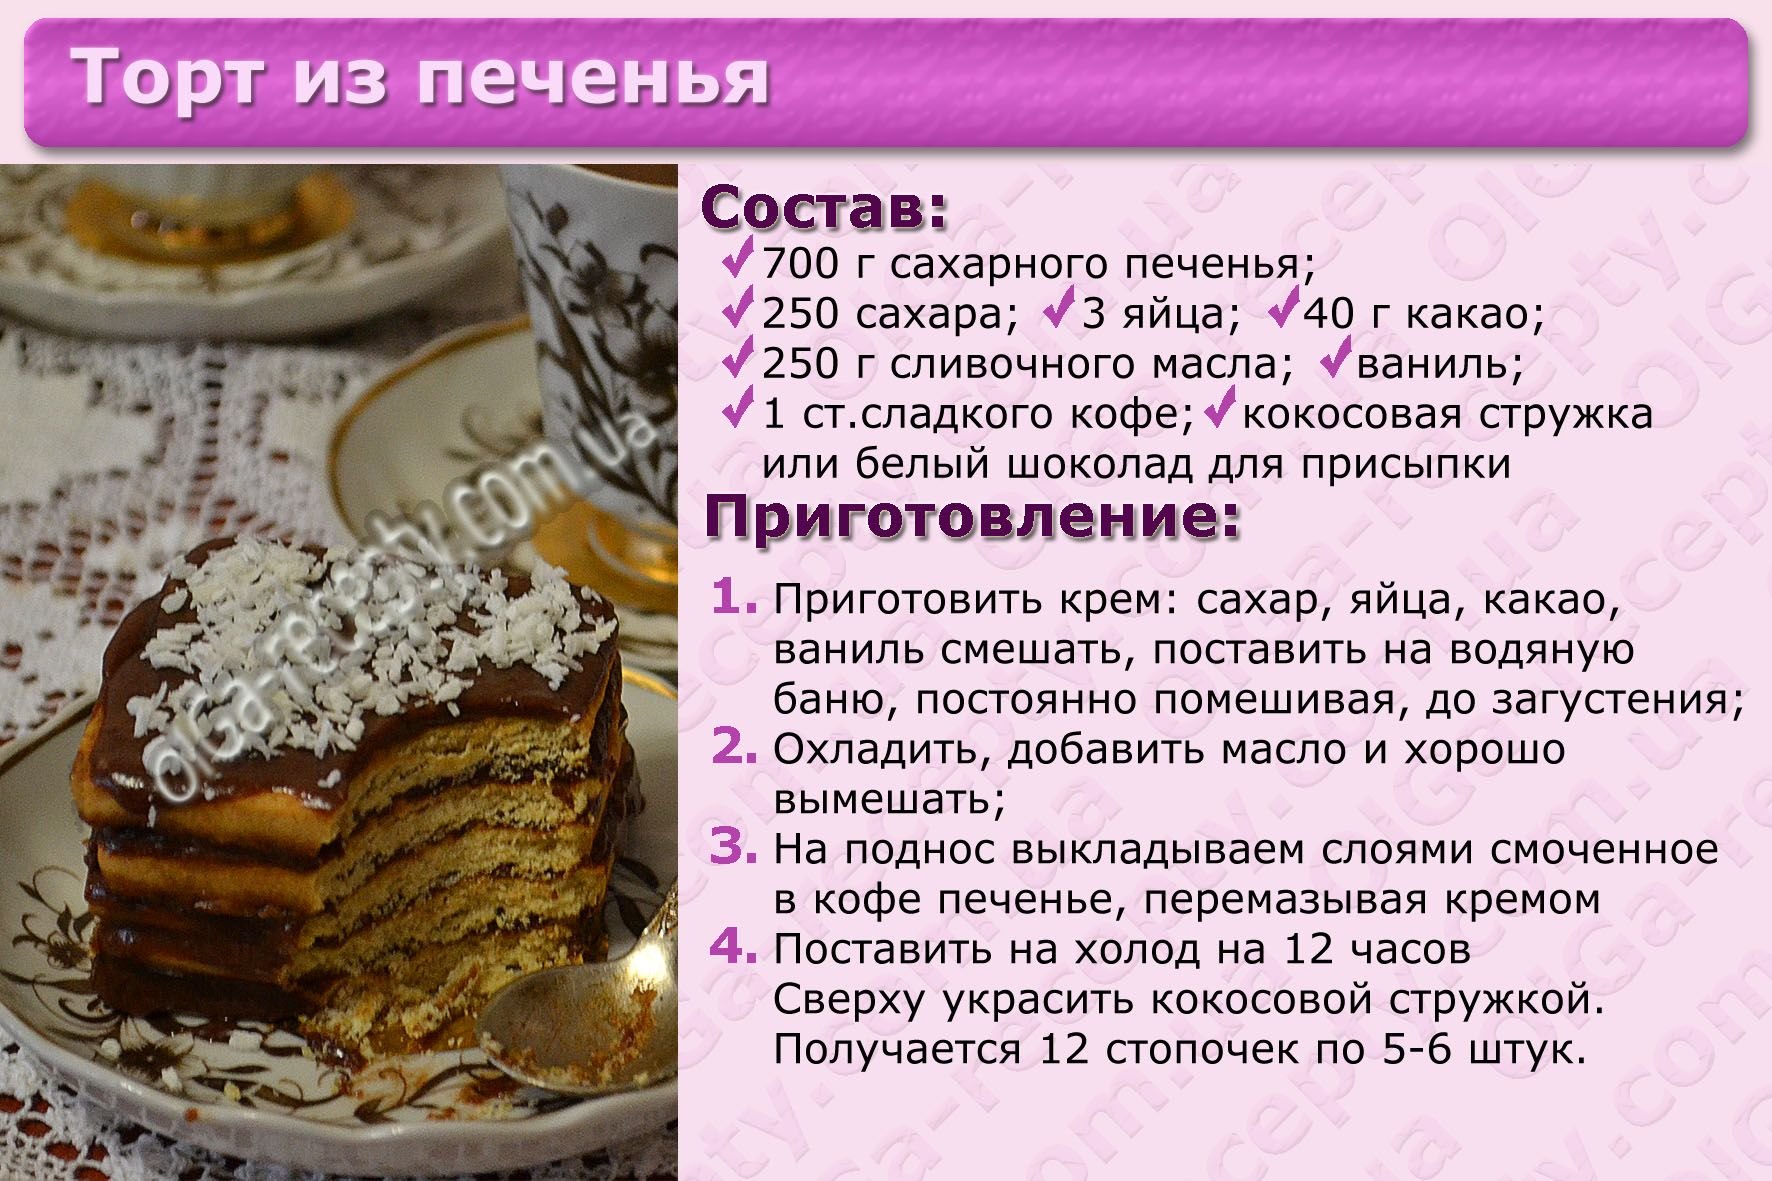 Вкусный домашний торт рецепт на день рождения. Картинки с рецептами тортов. Несложные рецепты тортов с картинкой. Рецепт торта картинки с описанием. Приготовление торта картинки.